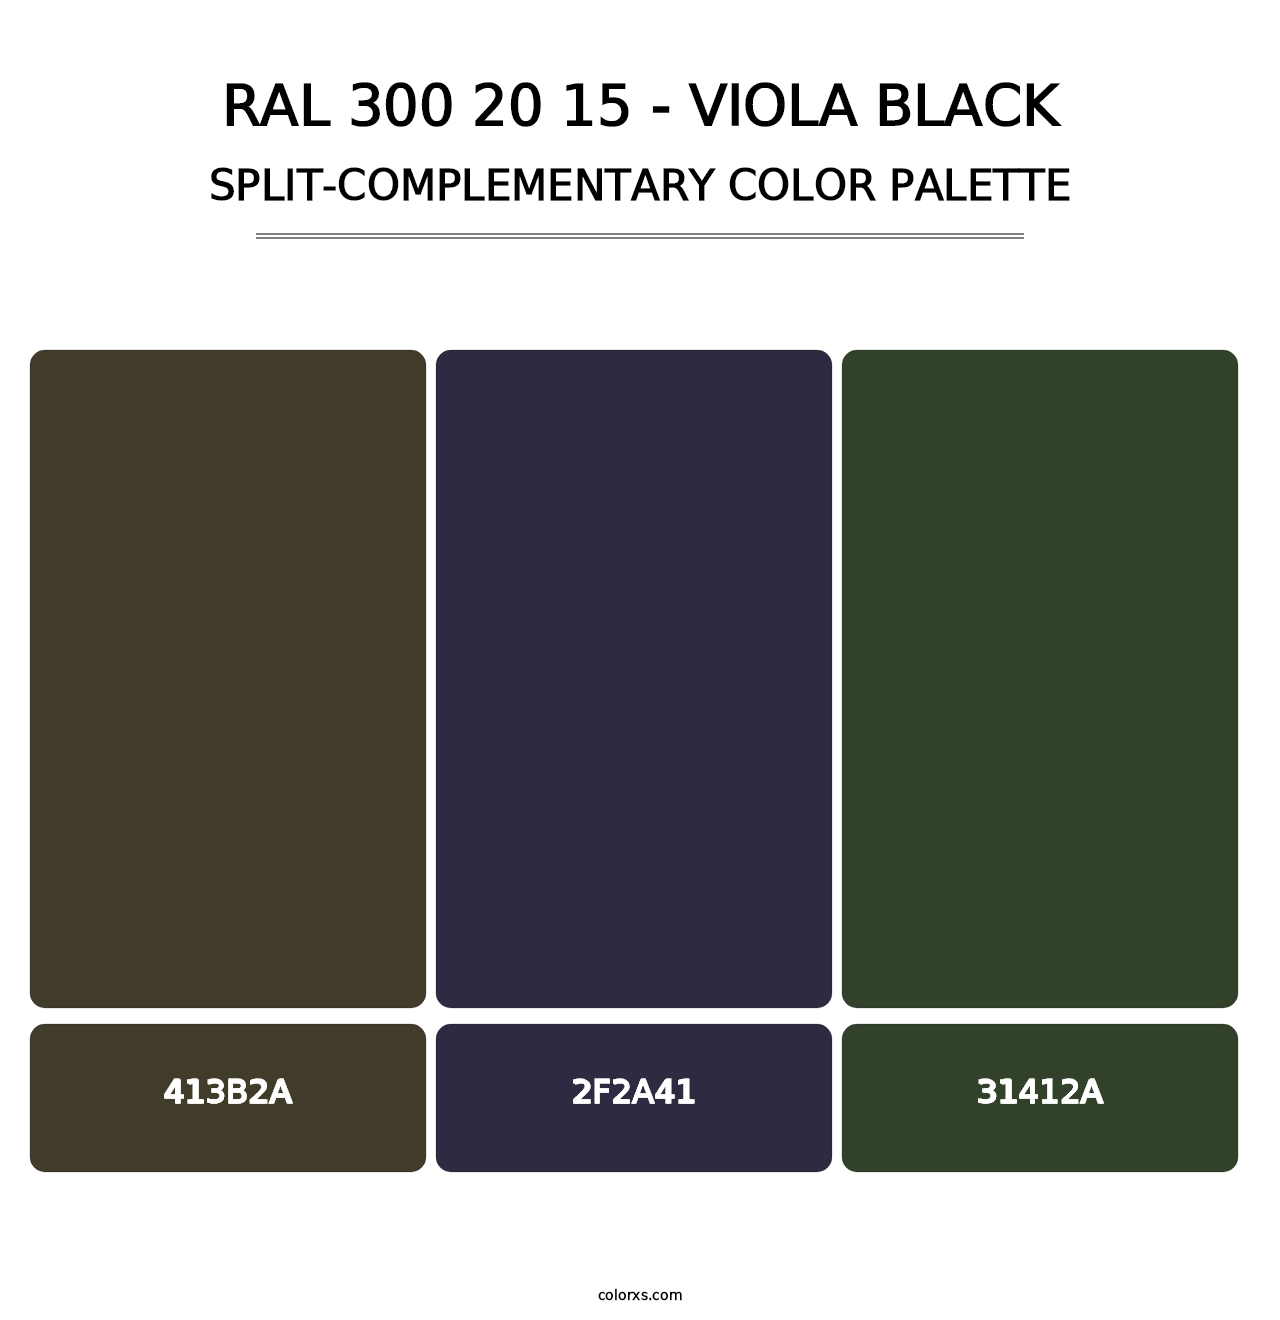 RAL 300 20 15 - Viola Black - Split-Complementary Color Palette